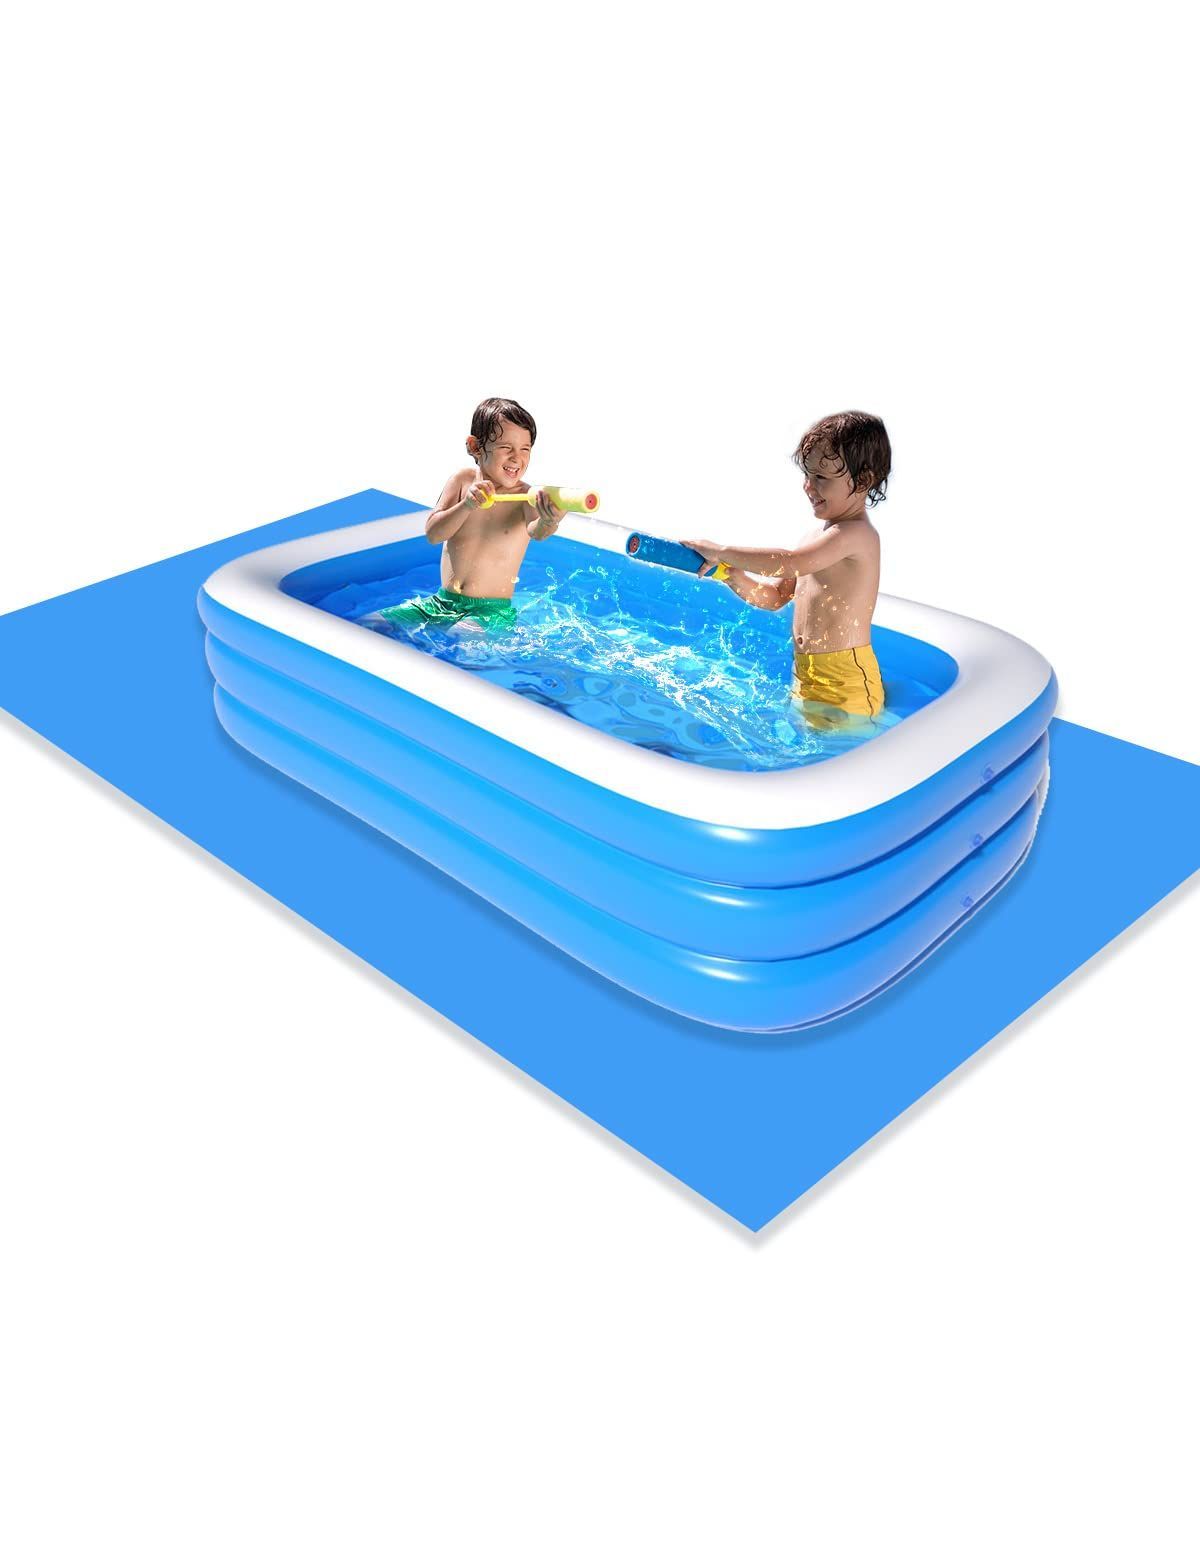 ビニールプール 子供用プール 大型 ベビープール 水遊び 猛暑対策 